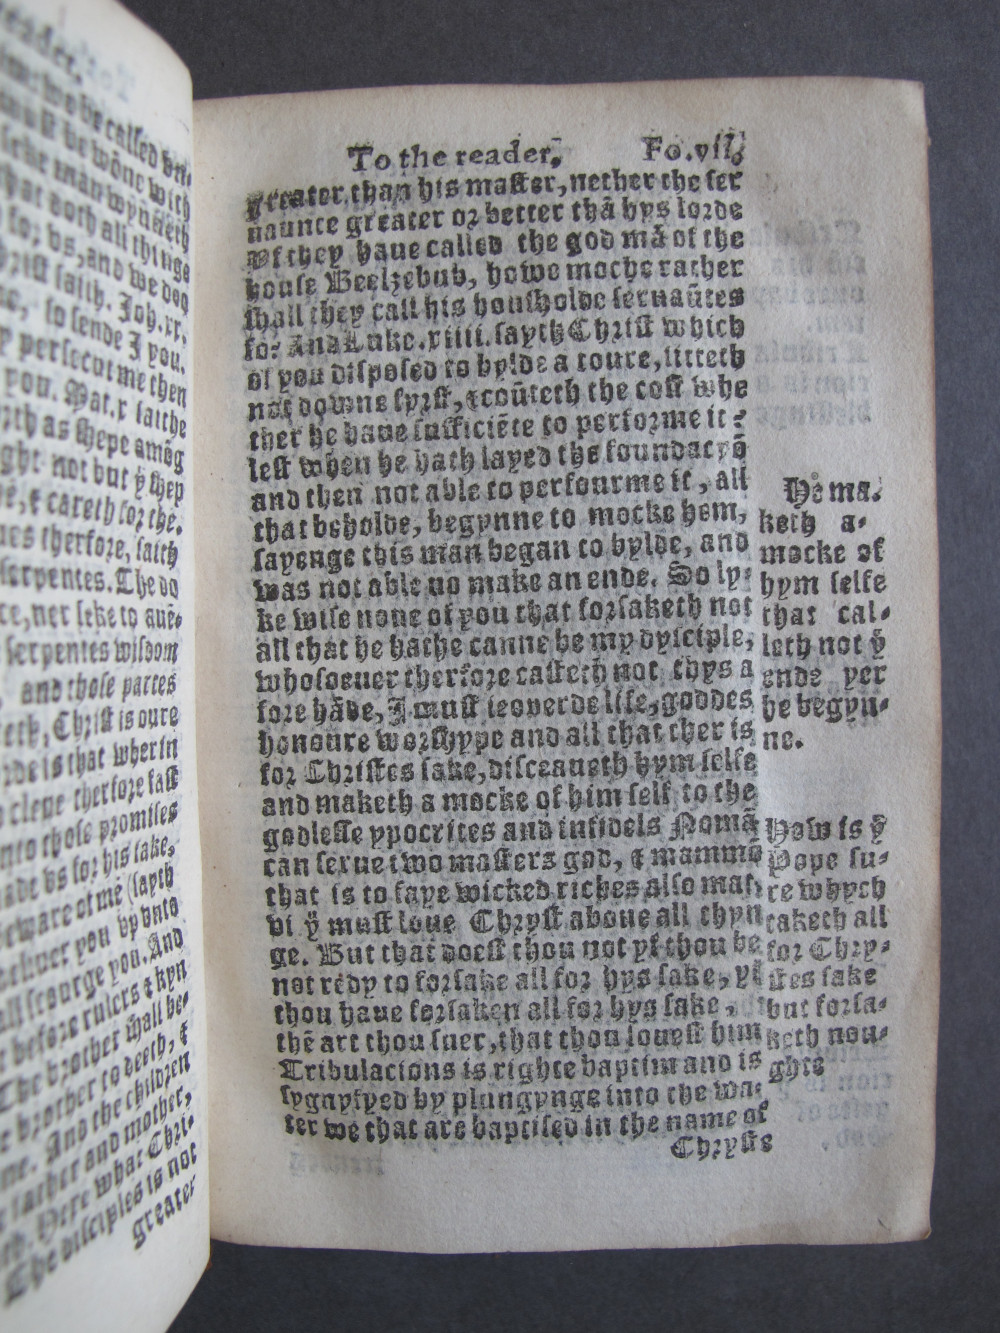 1 Folio A7 recto